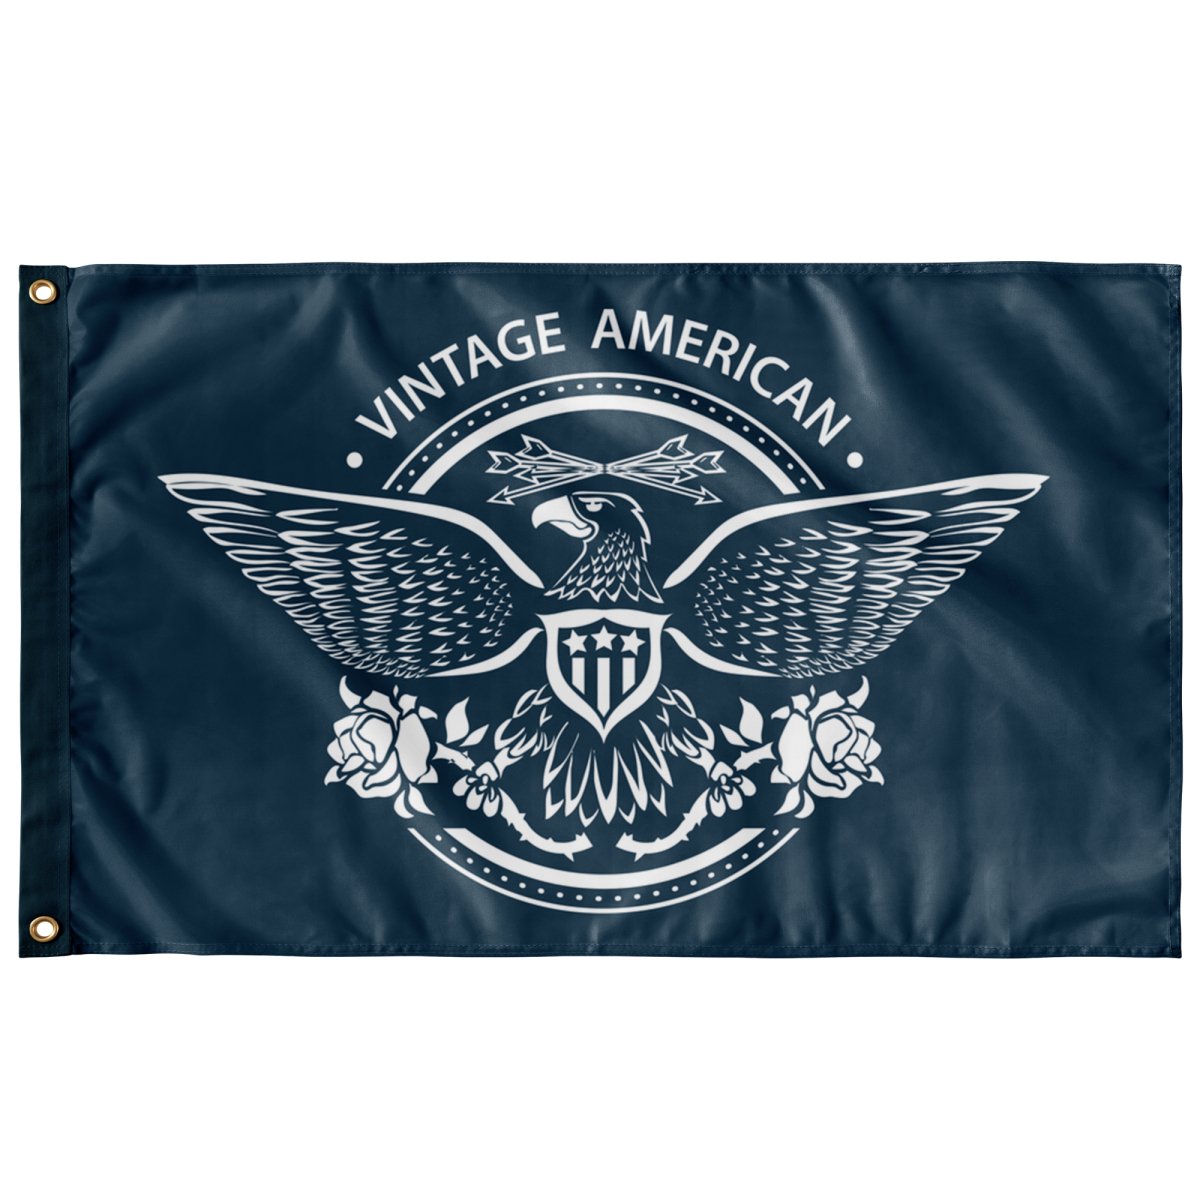 Vintage American - Flag